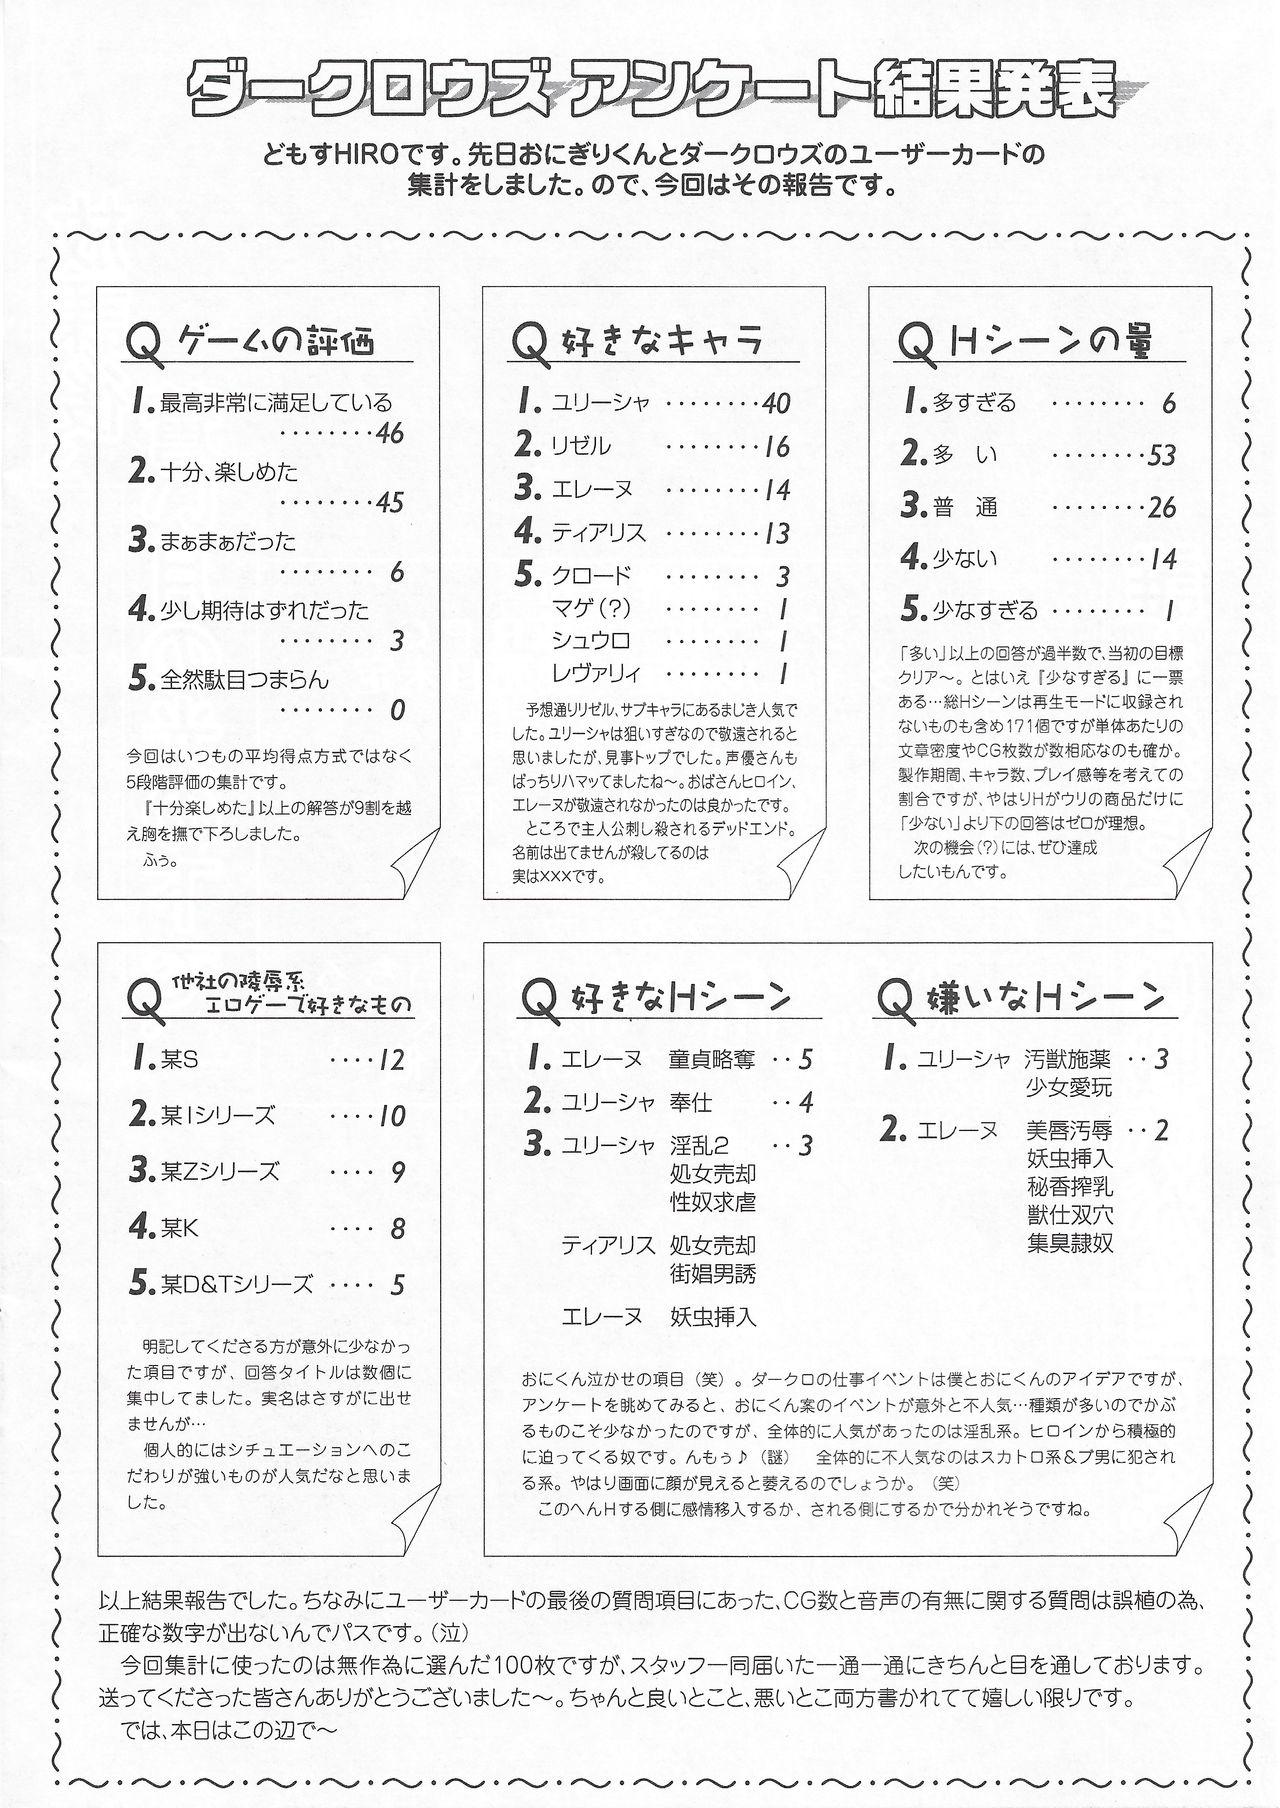 Puba Arisu no Denchi Bakudan Vol. 11 Deutsch - Page 9